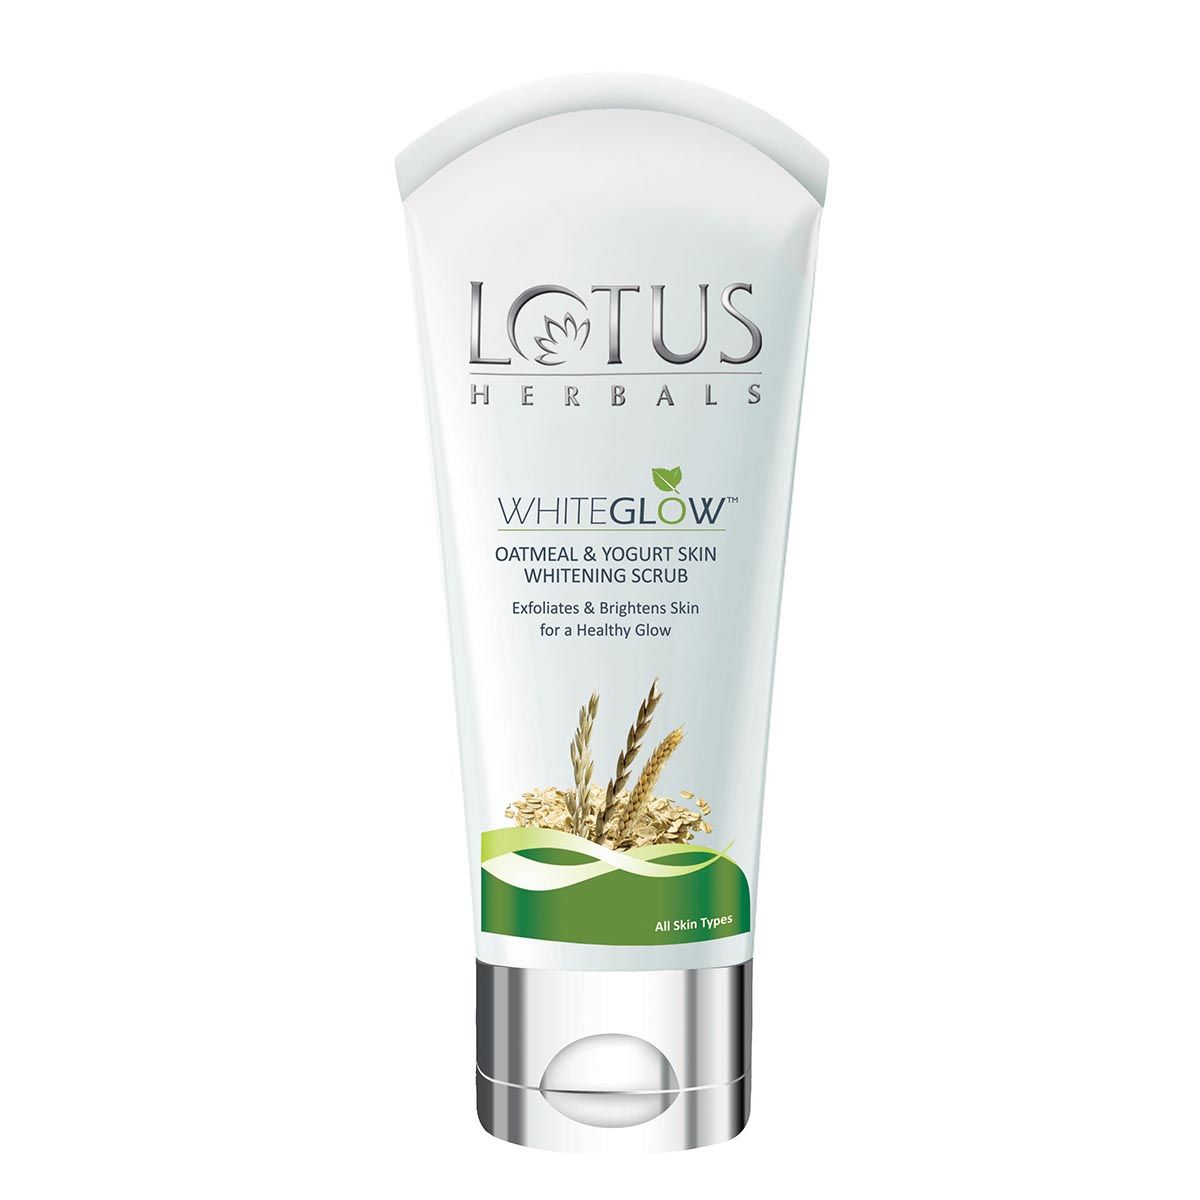 Buy Lotus Herbals Whiteglow Oatmeal & Yogurt Skin Whitening Scrub (50 g) - Purplle